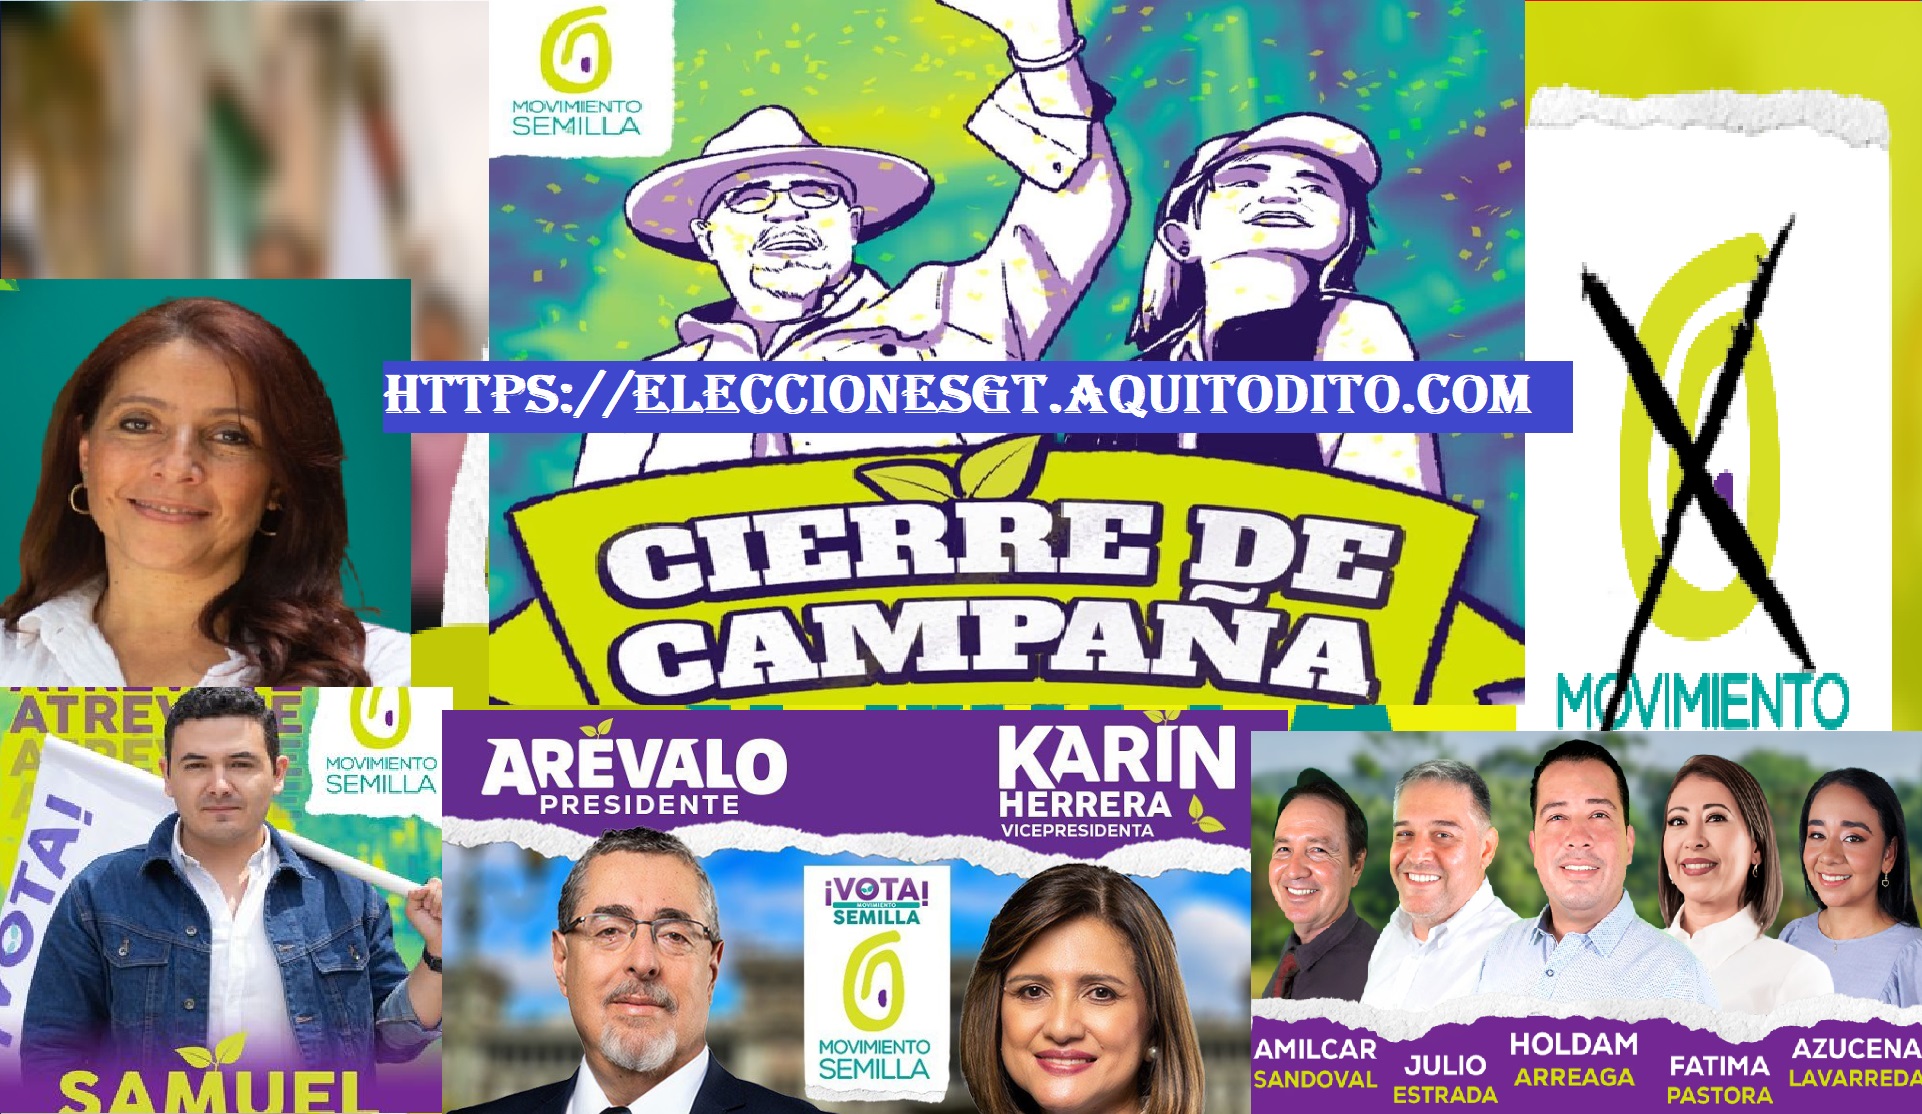 CIERRE DE CAMPAÑA EN VIVO Movimiento Semilla Elecciones GT 2023